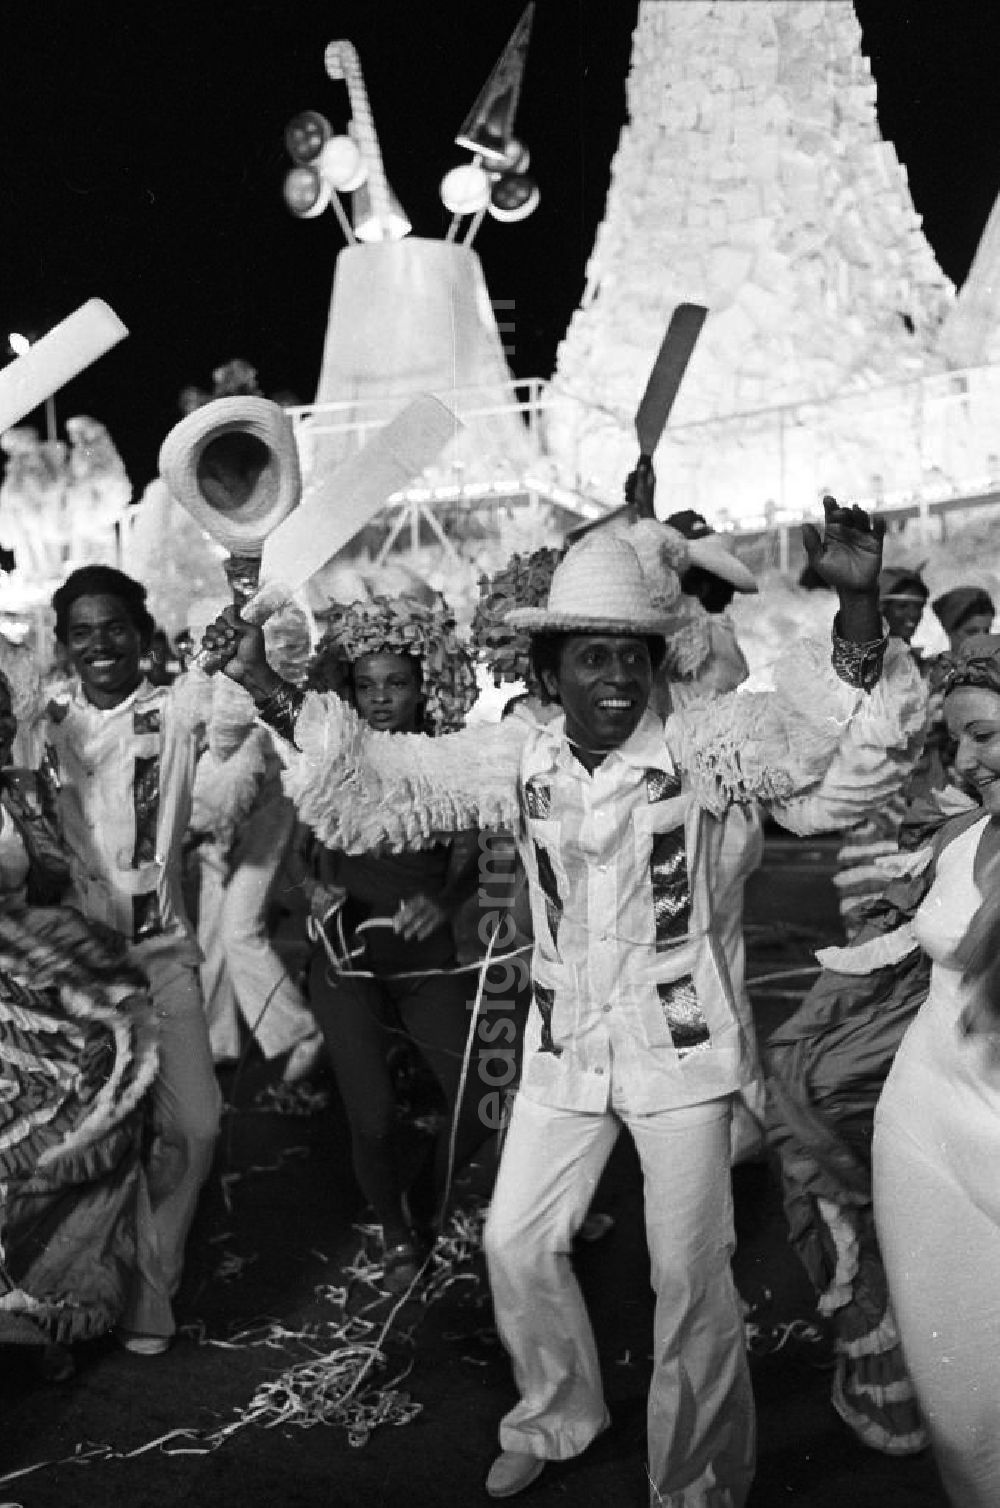 Havanna: Karneval während der XI. Weltfestspiele der Jugend und Studenten vom 28.07. - 05.08.1978. Tänzer in Kostümen. Karneval hat auf Kuba eine lange Tradition, besonders in Santiago de Cuba. Er verschmilzt karibische, brasilianische und afrikanische Einflüsse. Die Weltfestspiele standen unter dem Motto: Für antiimperialistische Solidarität, Frieden und Freundschaft. 18.500 Jugendliche aus 145 Ländern nahmen teil, darunter 20